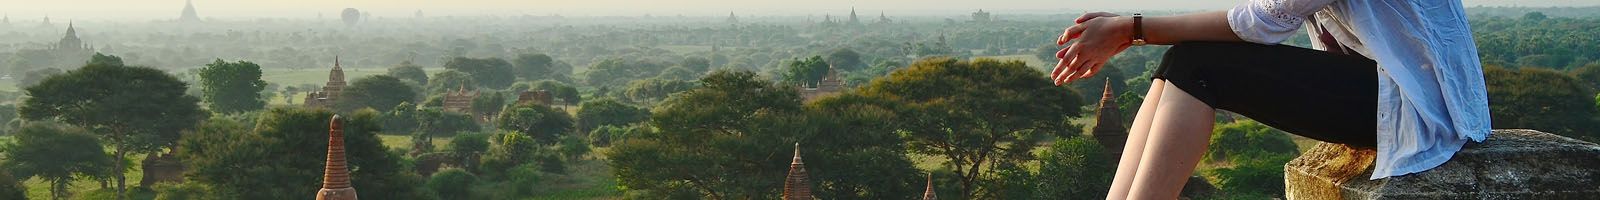 Tour Du lịch đi Myanmar Giá Rẻ: Giảm giá Tour Hành Hương